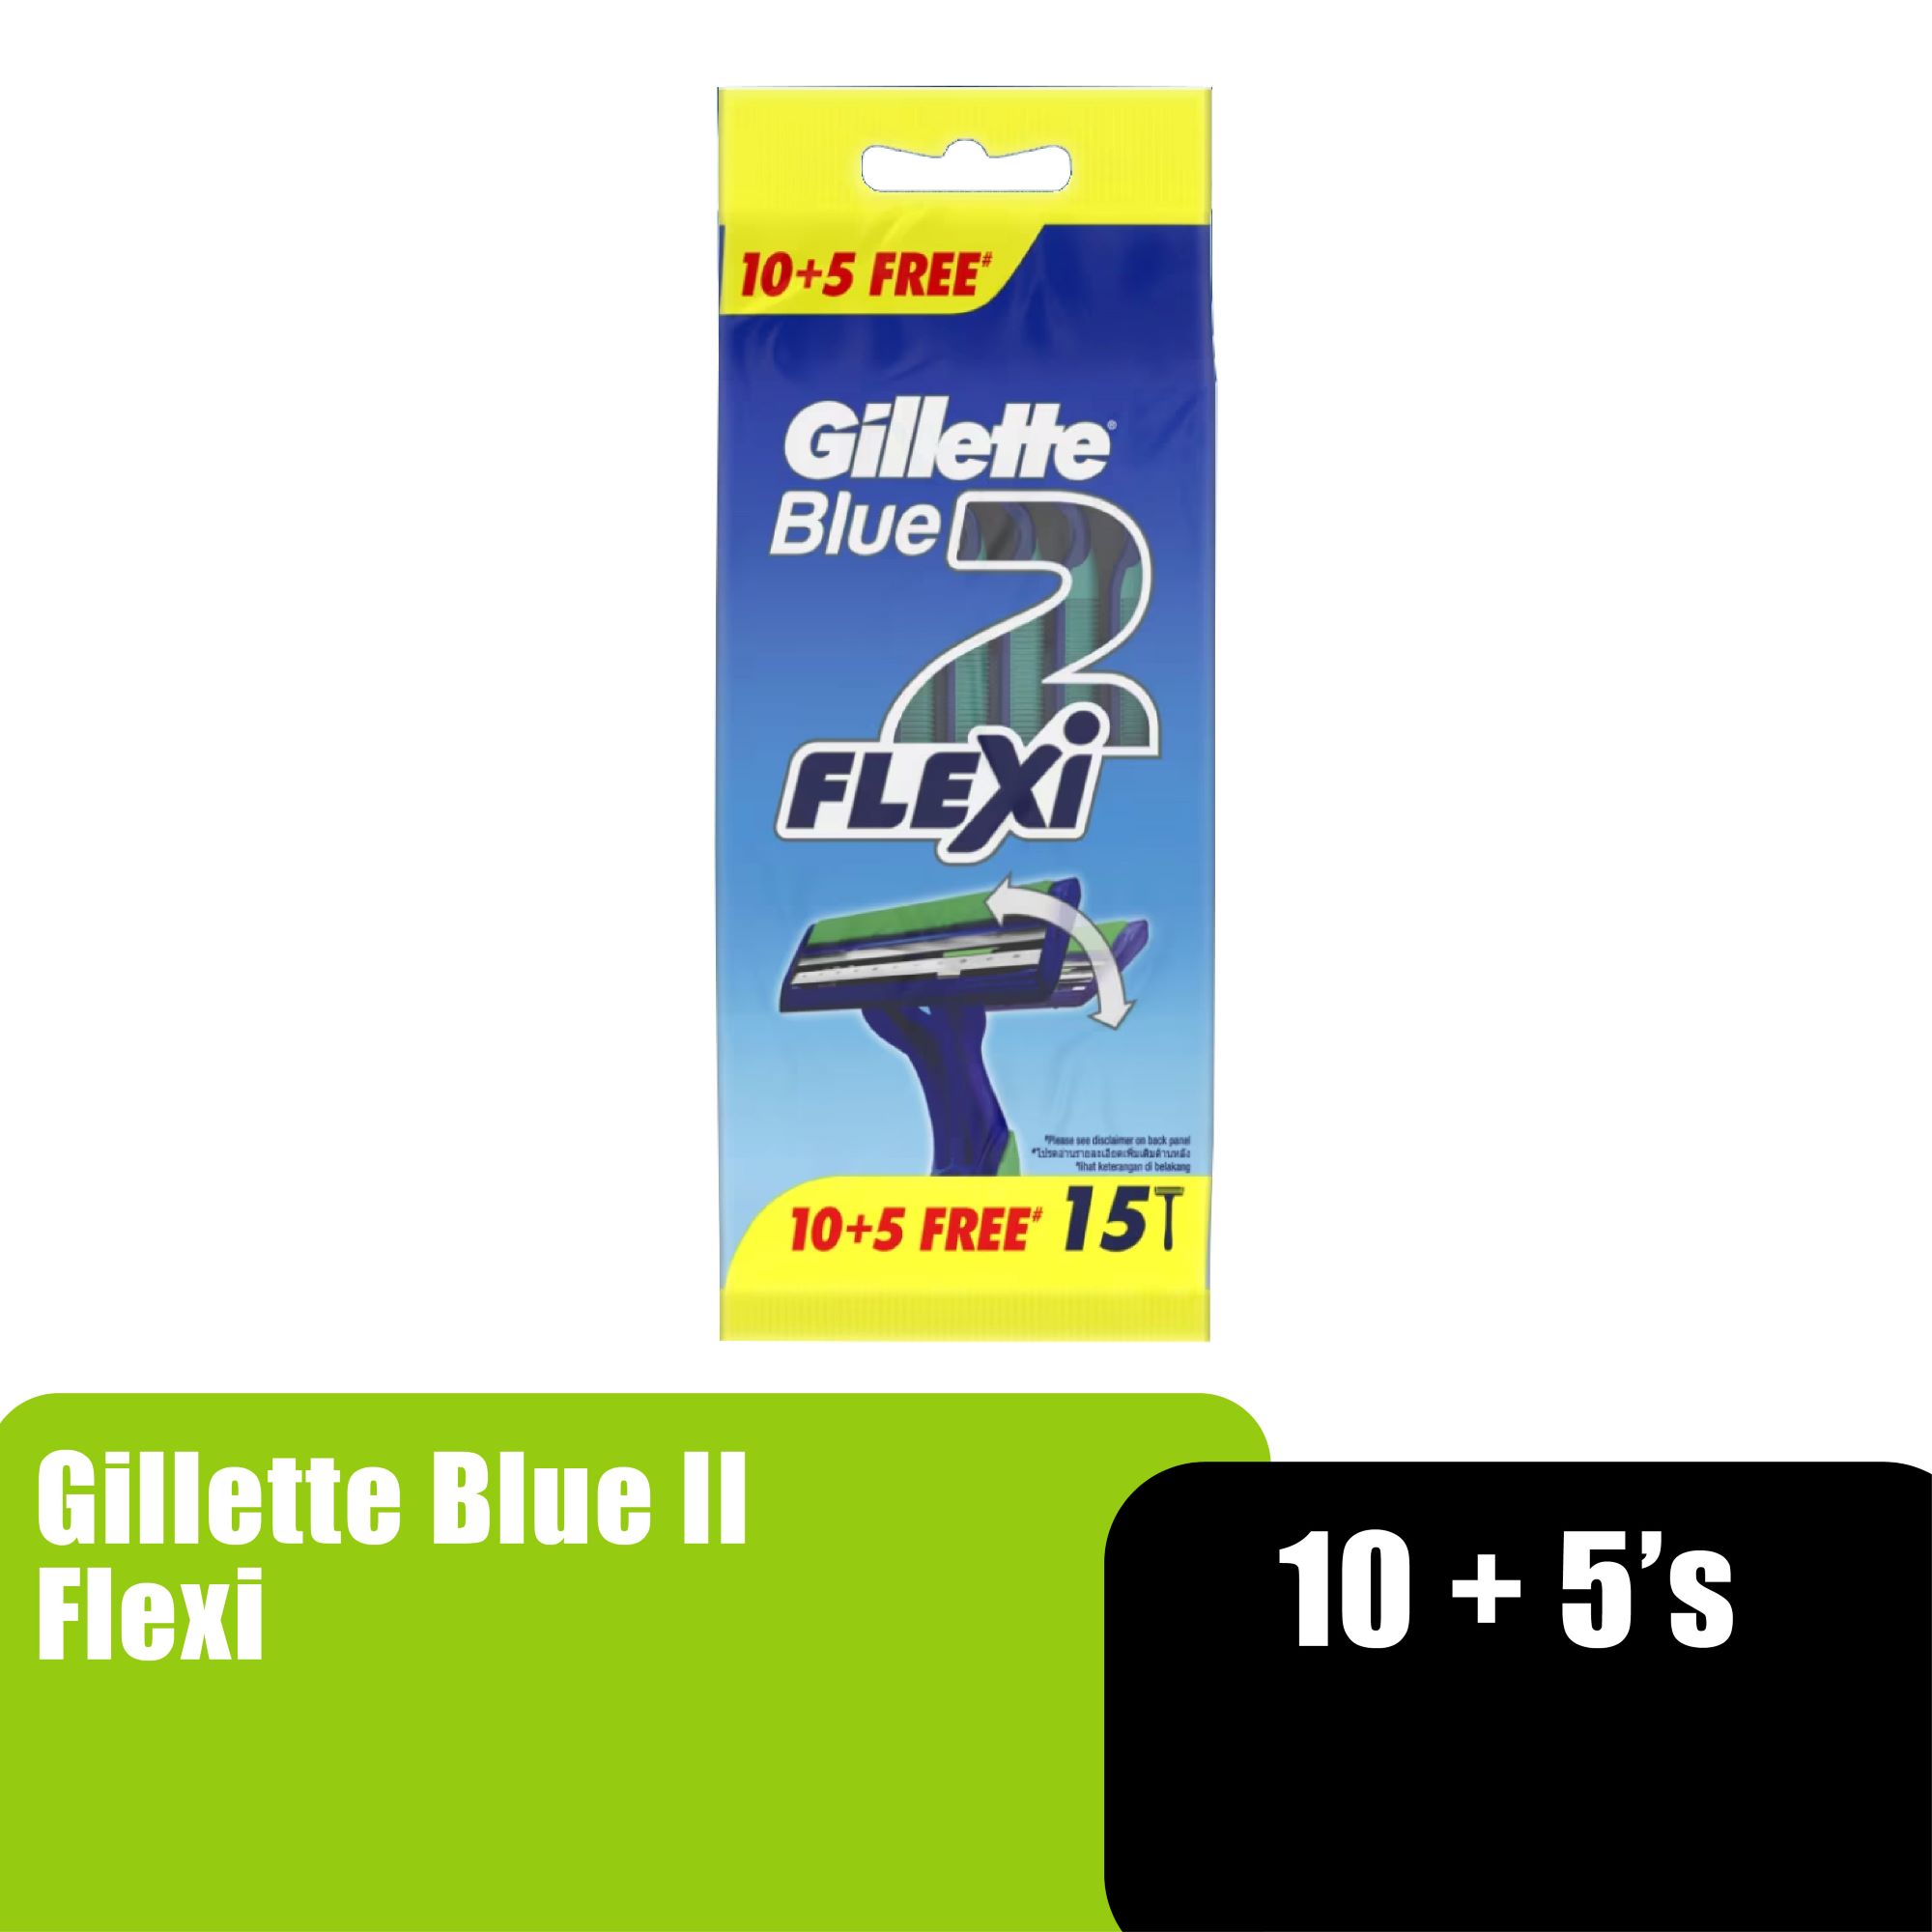 GILLETTE BLUE II FLEXI 10+5S